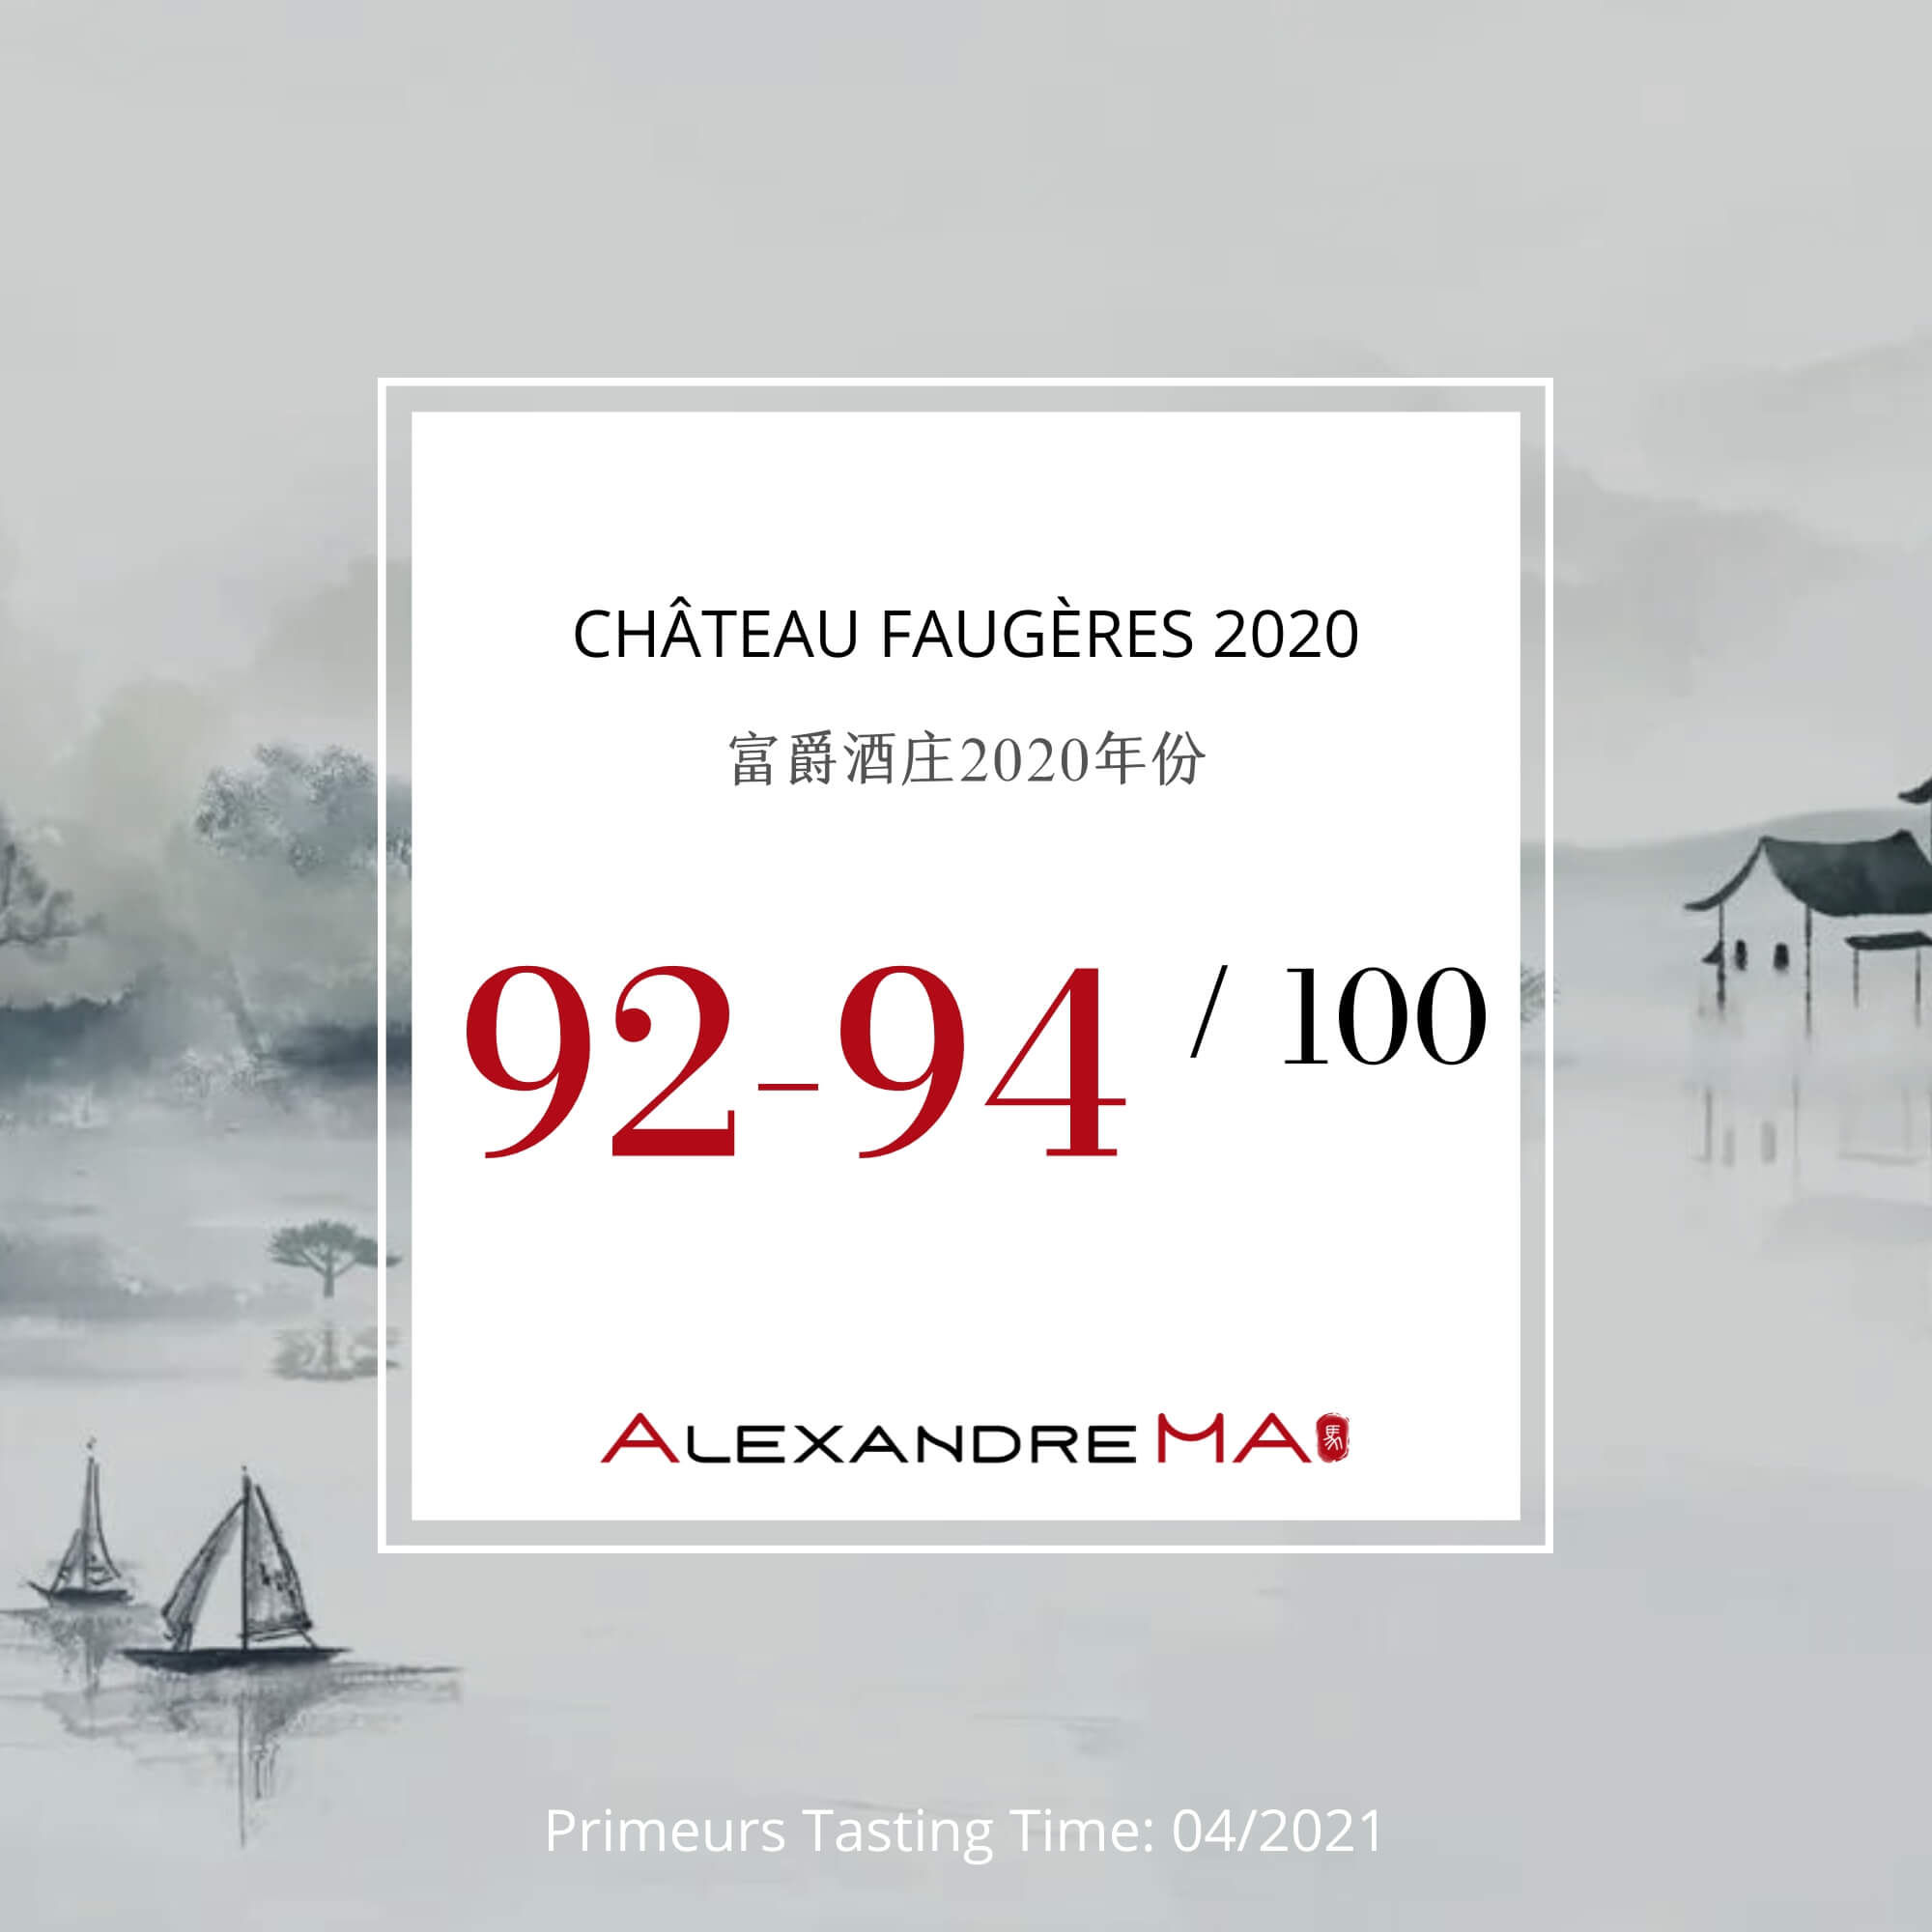 Château Faugères 2020 富爵酒庄 - Alexandre Ma